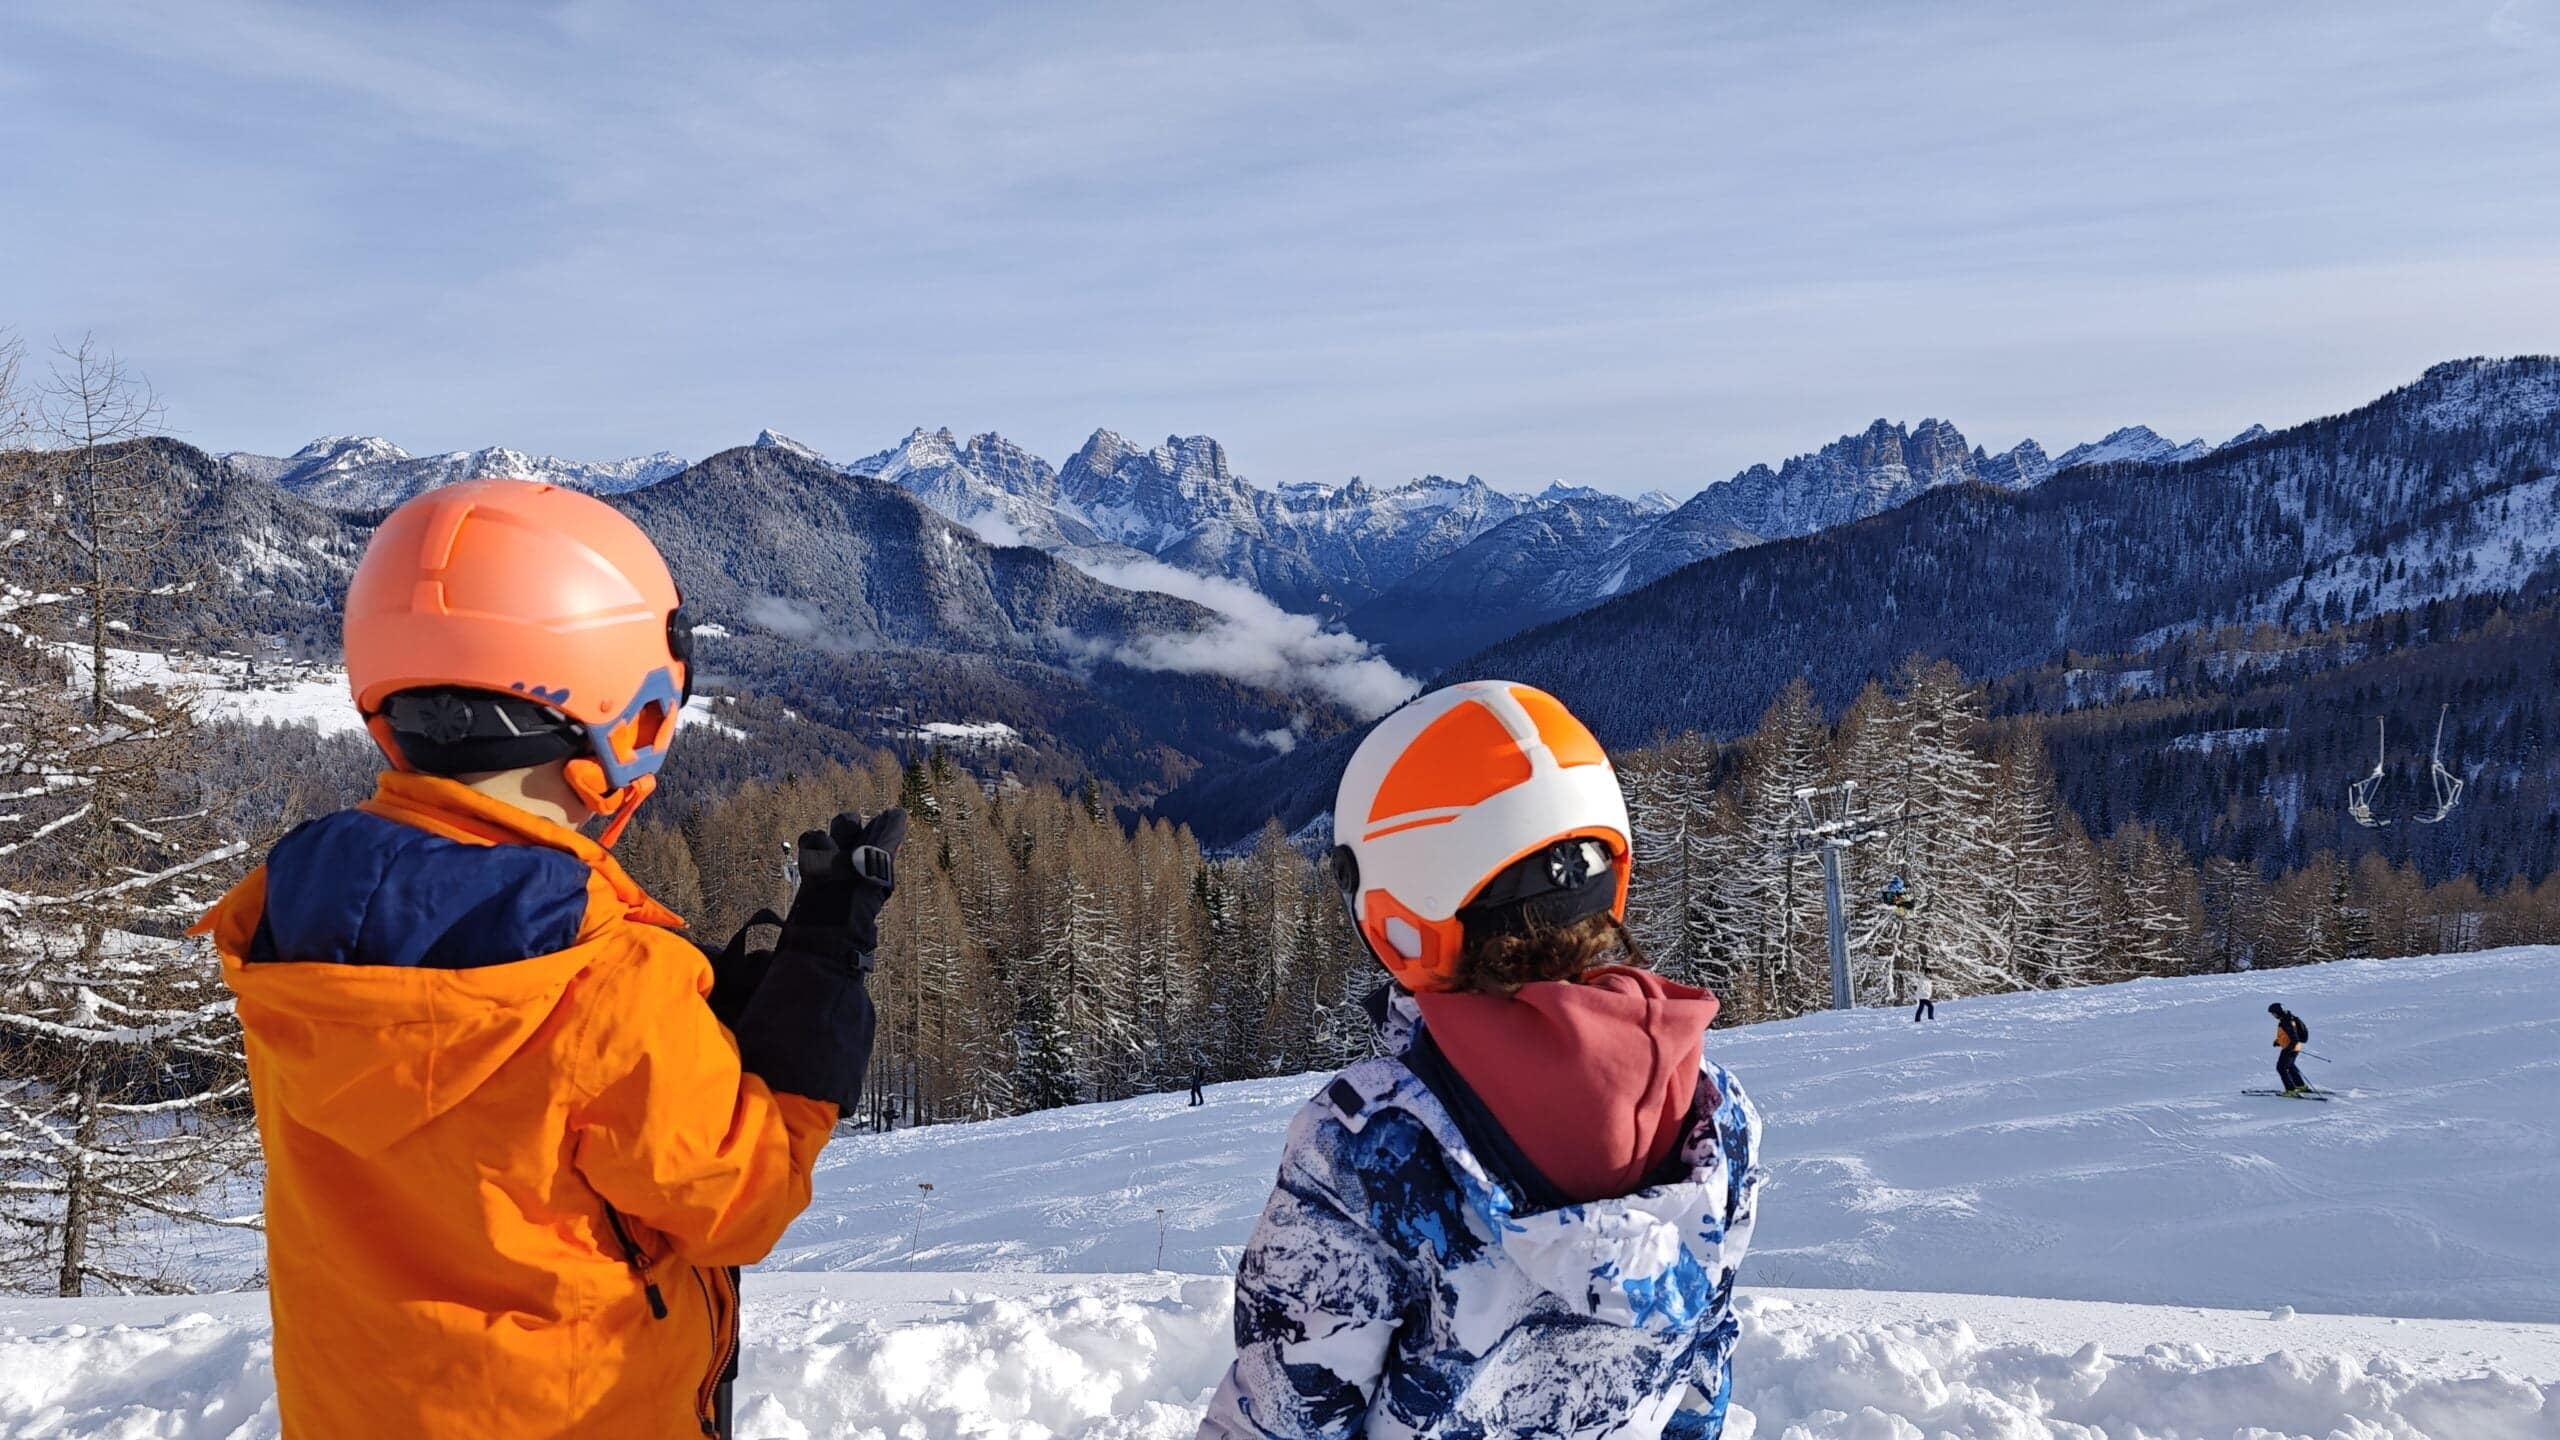 En aquest moment estàs veient El respirar de les Dolomites a l'hivern: Un viatge familiar a la Val di Zoldo